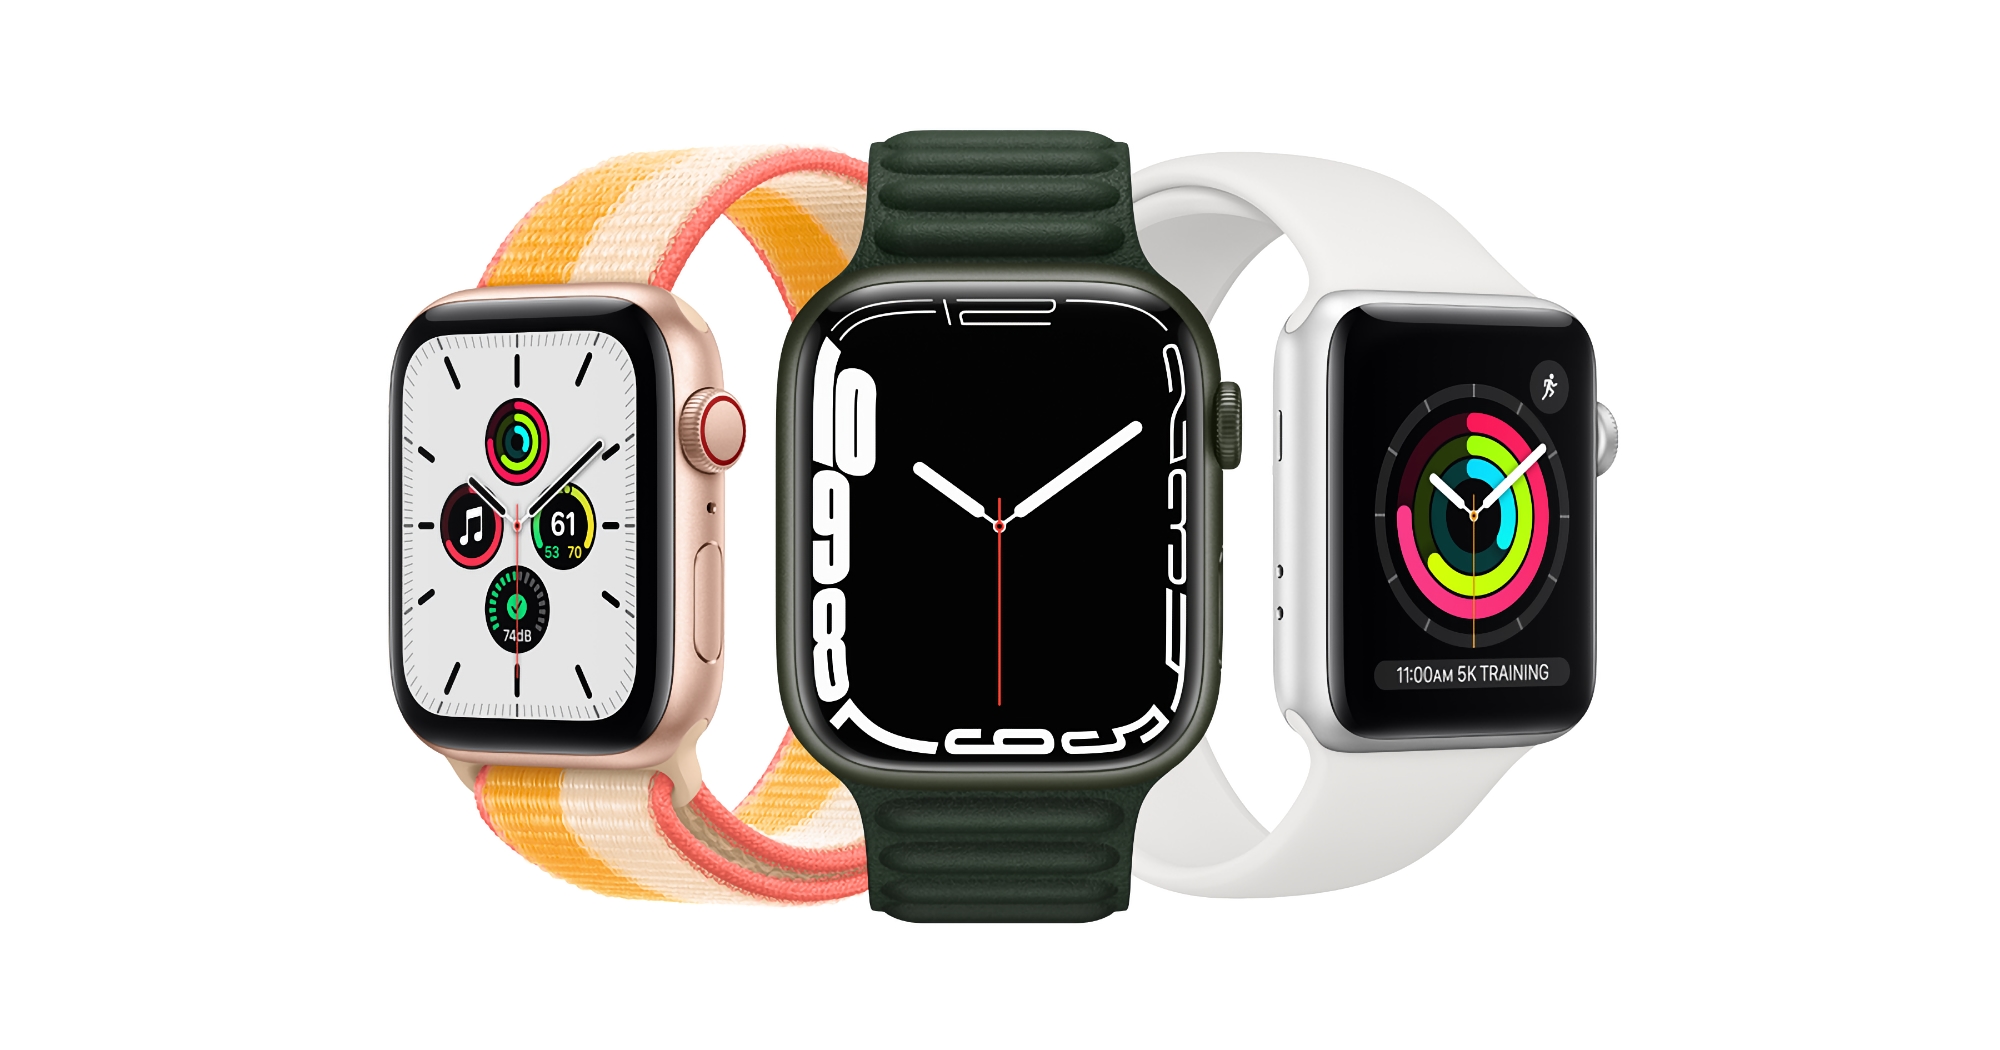 Niespodziewanie: Apple wydaje aktualizację watchOS 8.4.1 dla Apple Watch Series 4 i innych modeli